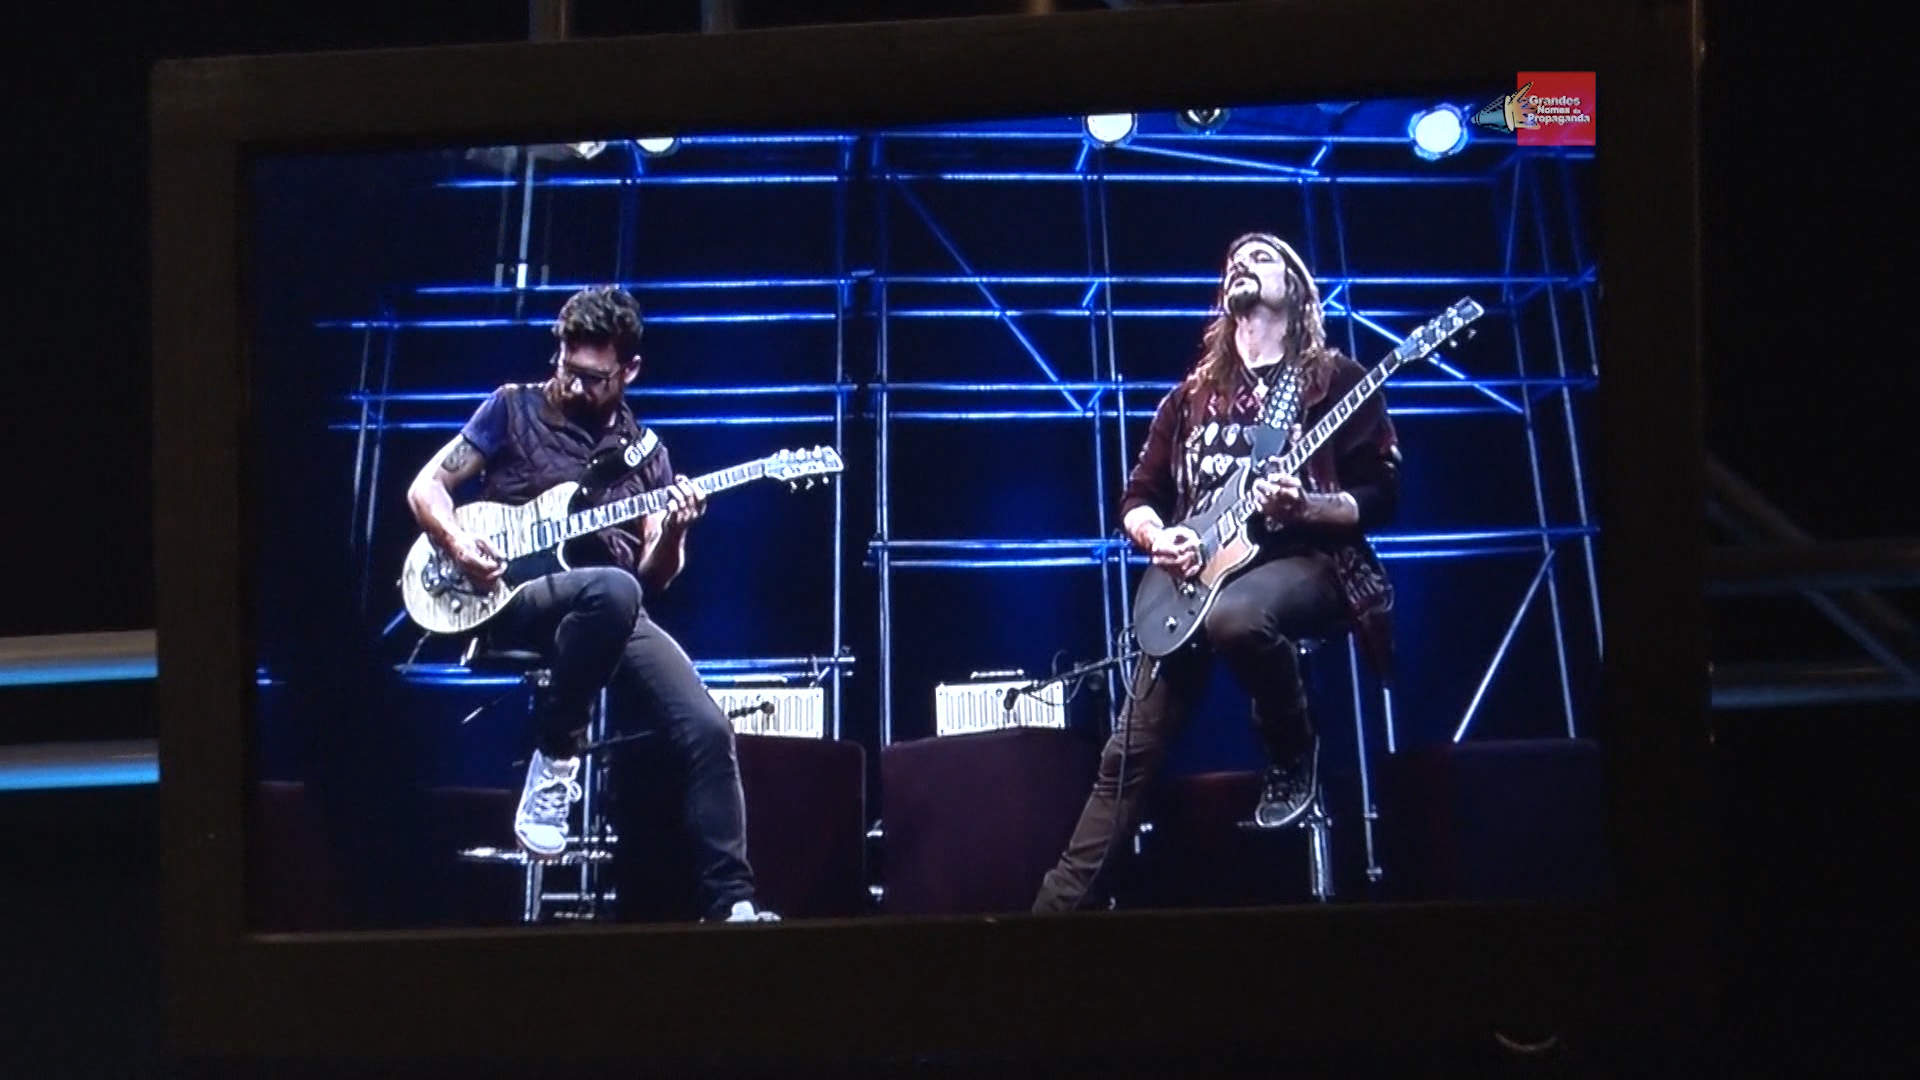 Yamaha Musical lança nova linha de guitarras RevStar